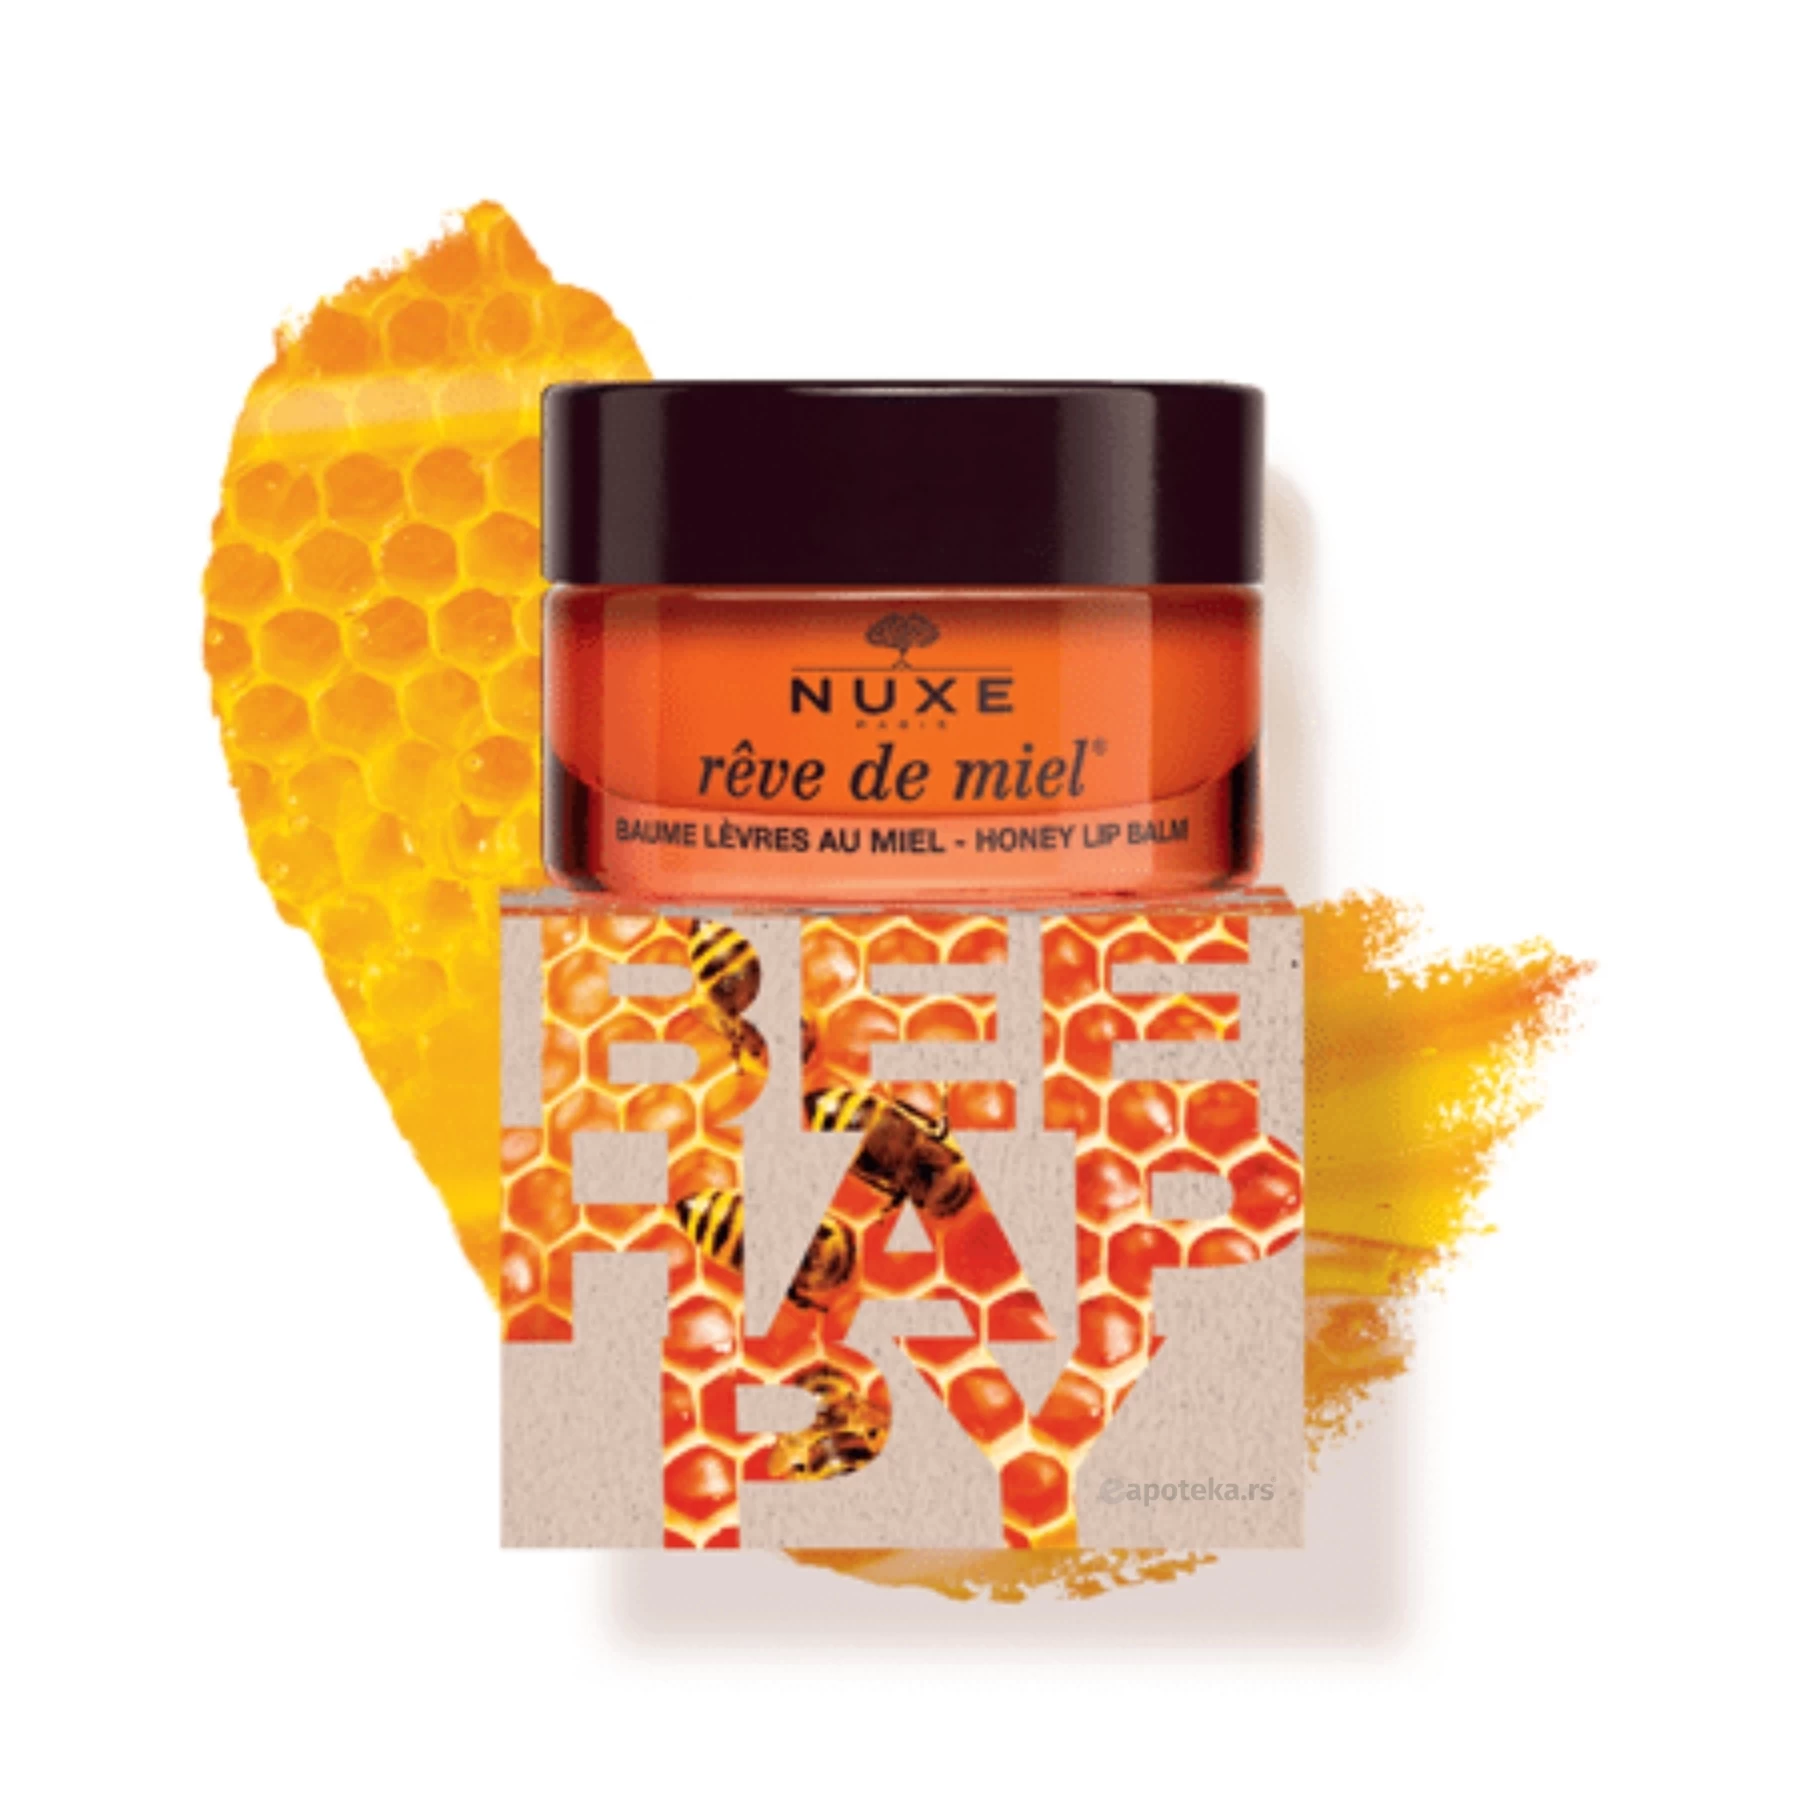 NUXE Rêve de Miel® Baume Levres au Miel Ultra-Nourrissant et Reparateur Bee Happy 15g Limited Edition